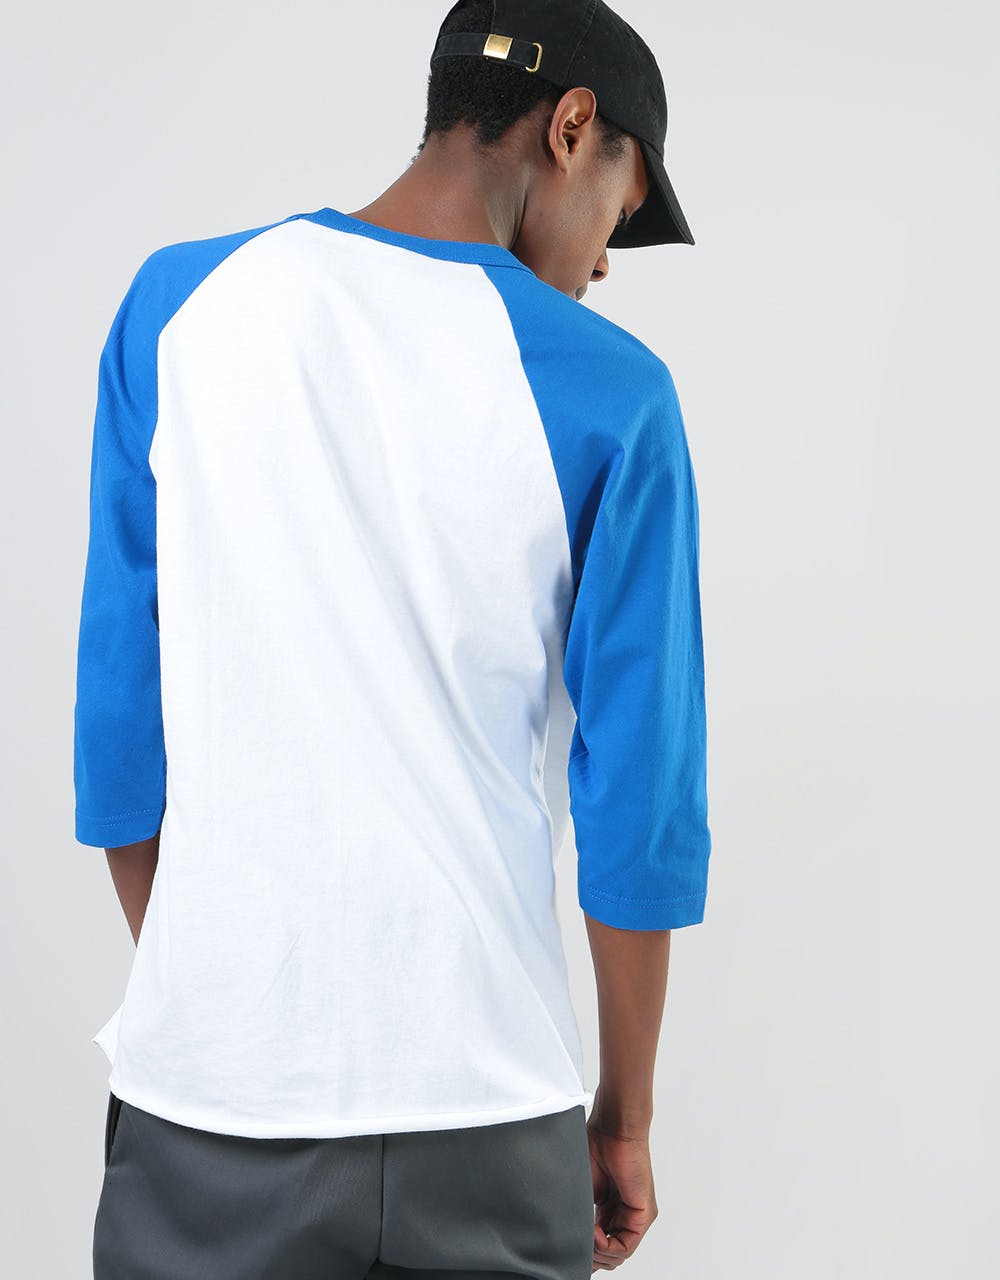 Thrasher Skategoat Raglan T-Shirt - White/Blue